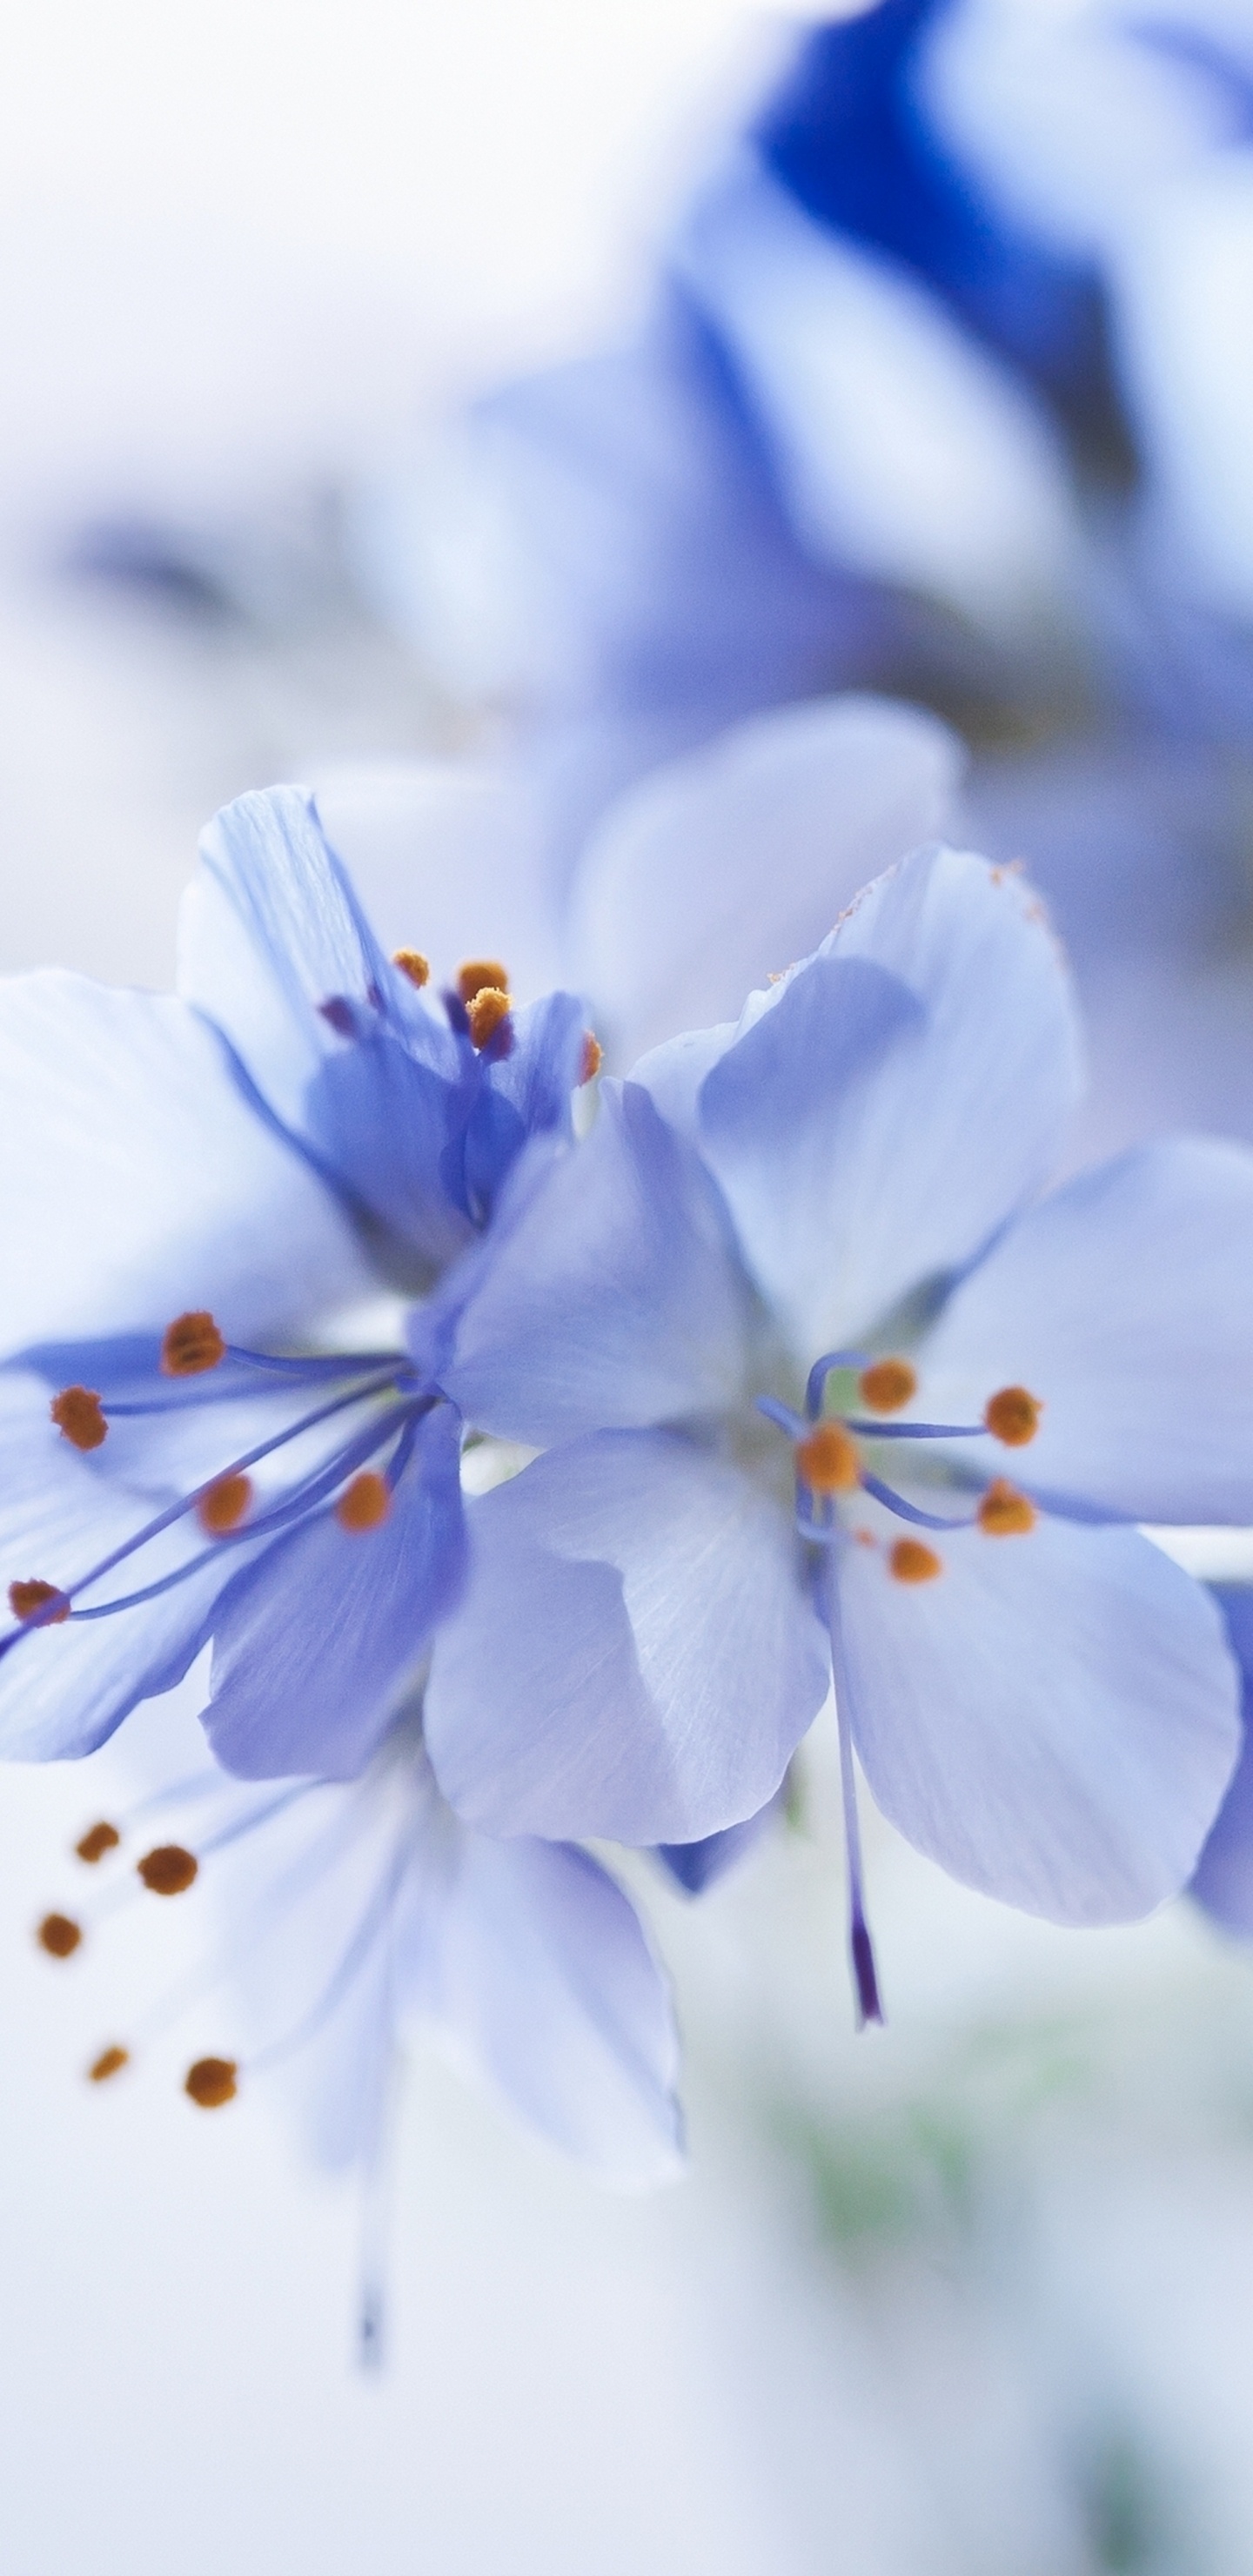 Fleurs Blanches et Bleues Dans L'objectif à Basculement. Wallpaper in 1440x2960 Resolution